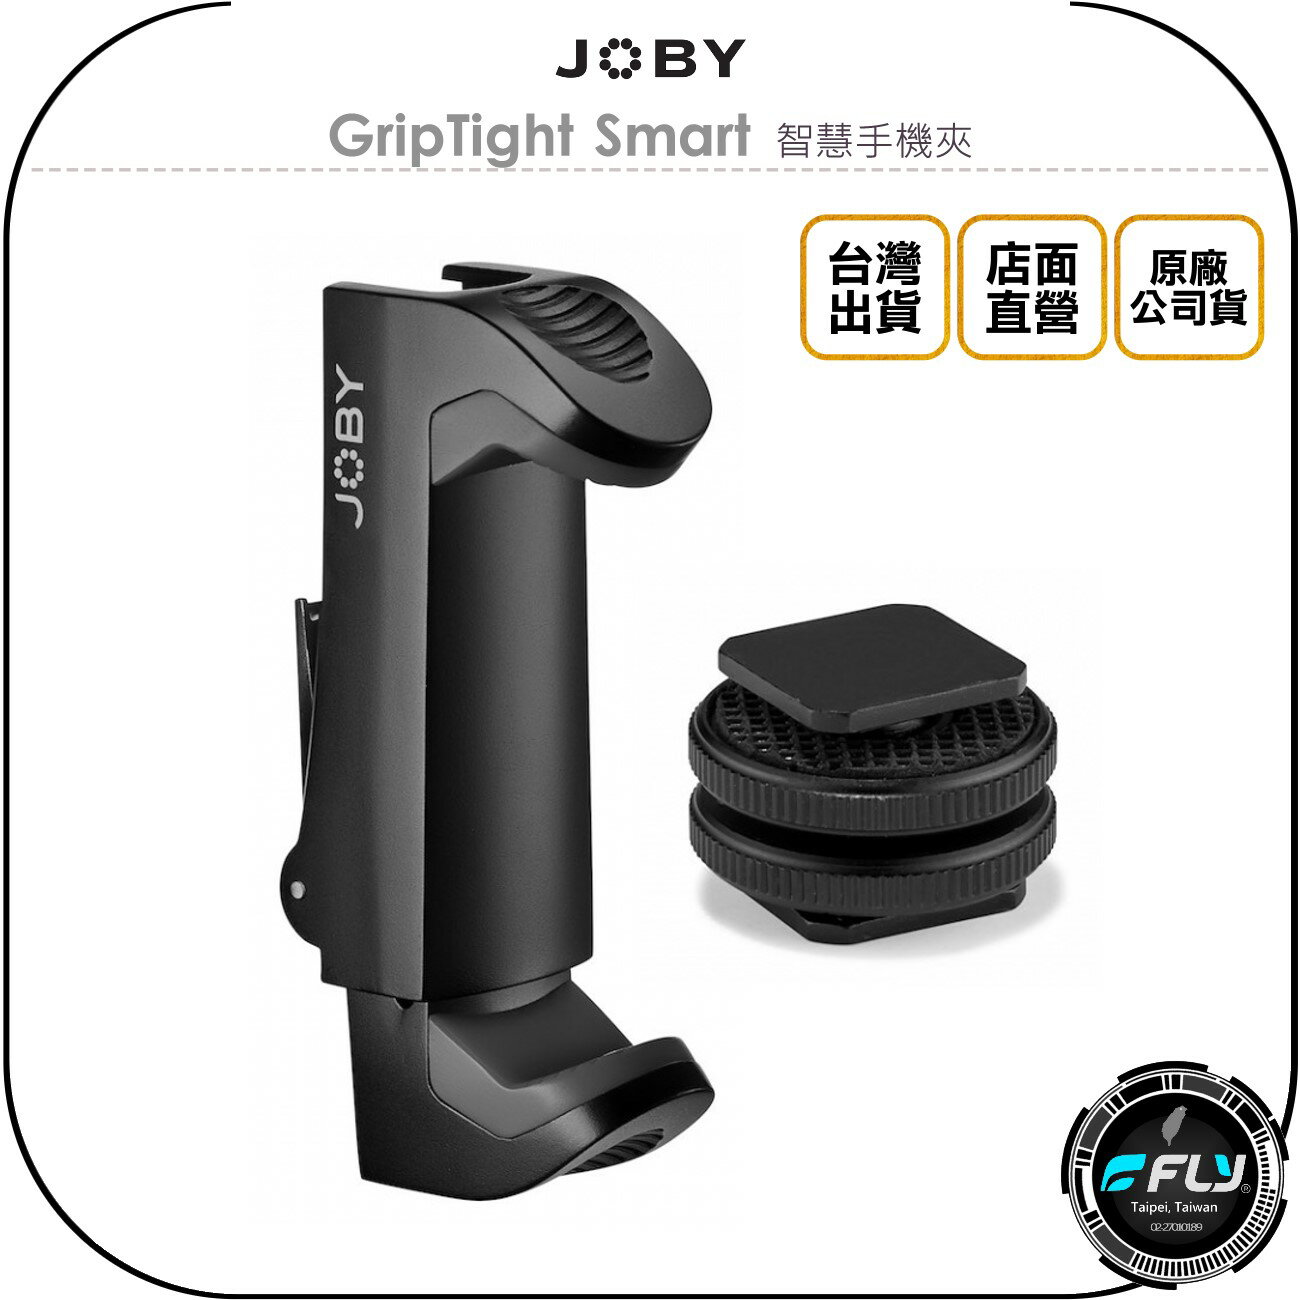 《飛翔無線3C》JOBY GripTight Smart 智慧手機夾◉公司貨◉含熱靴座◉直播錄影夾座